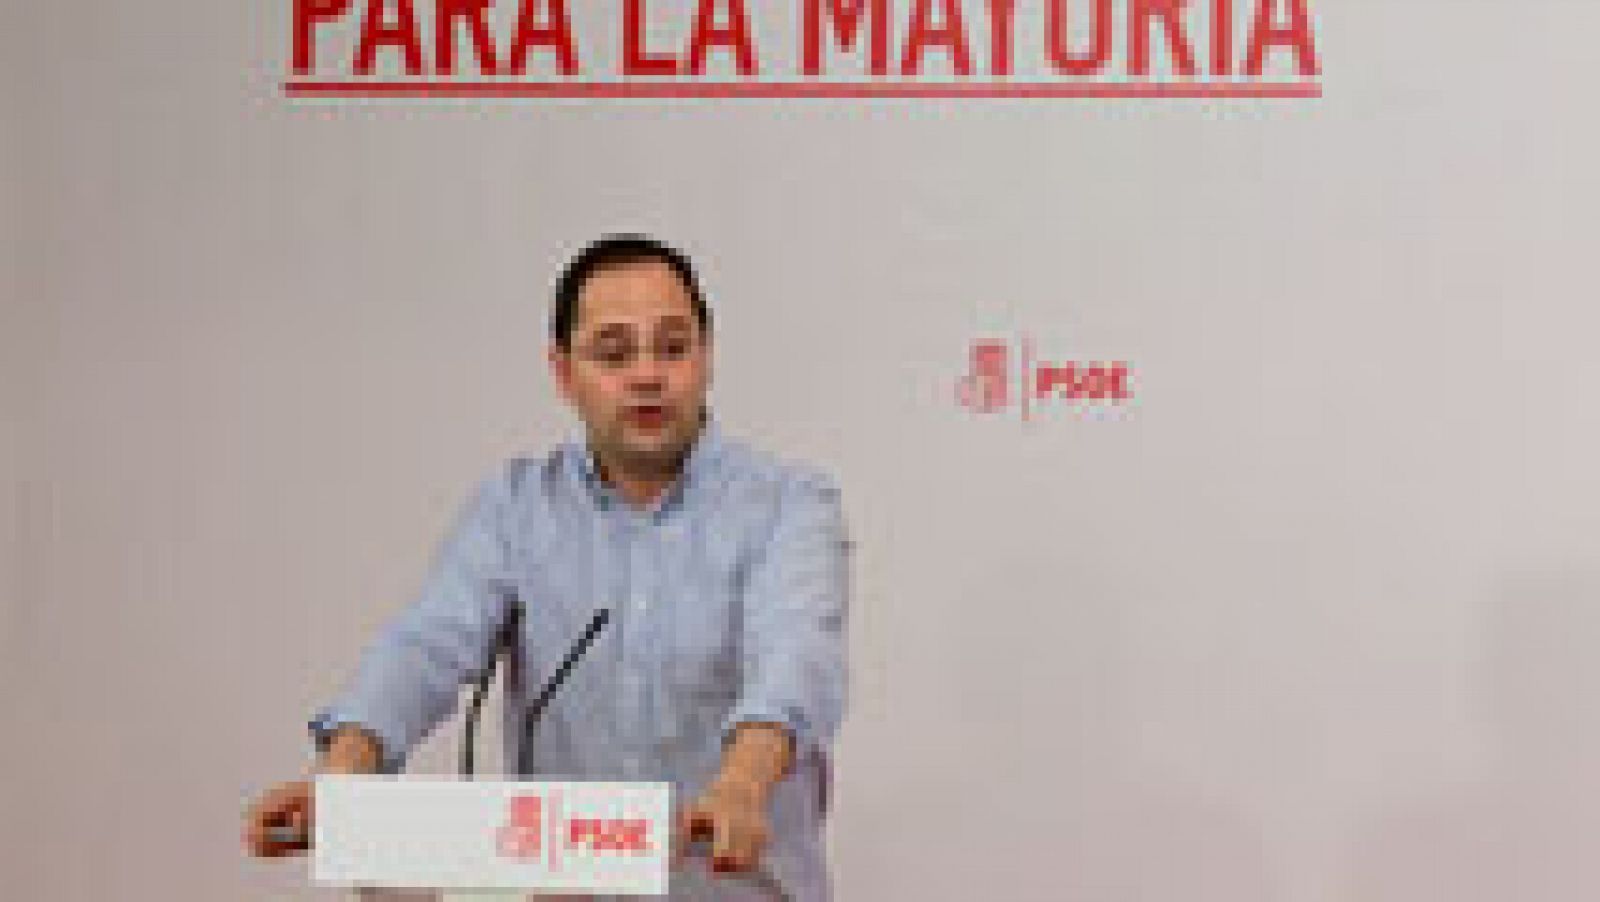 El PSOE asegura que está actuando con coherencia y responsabilidad